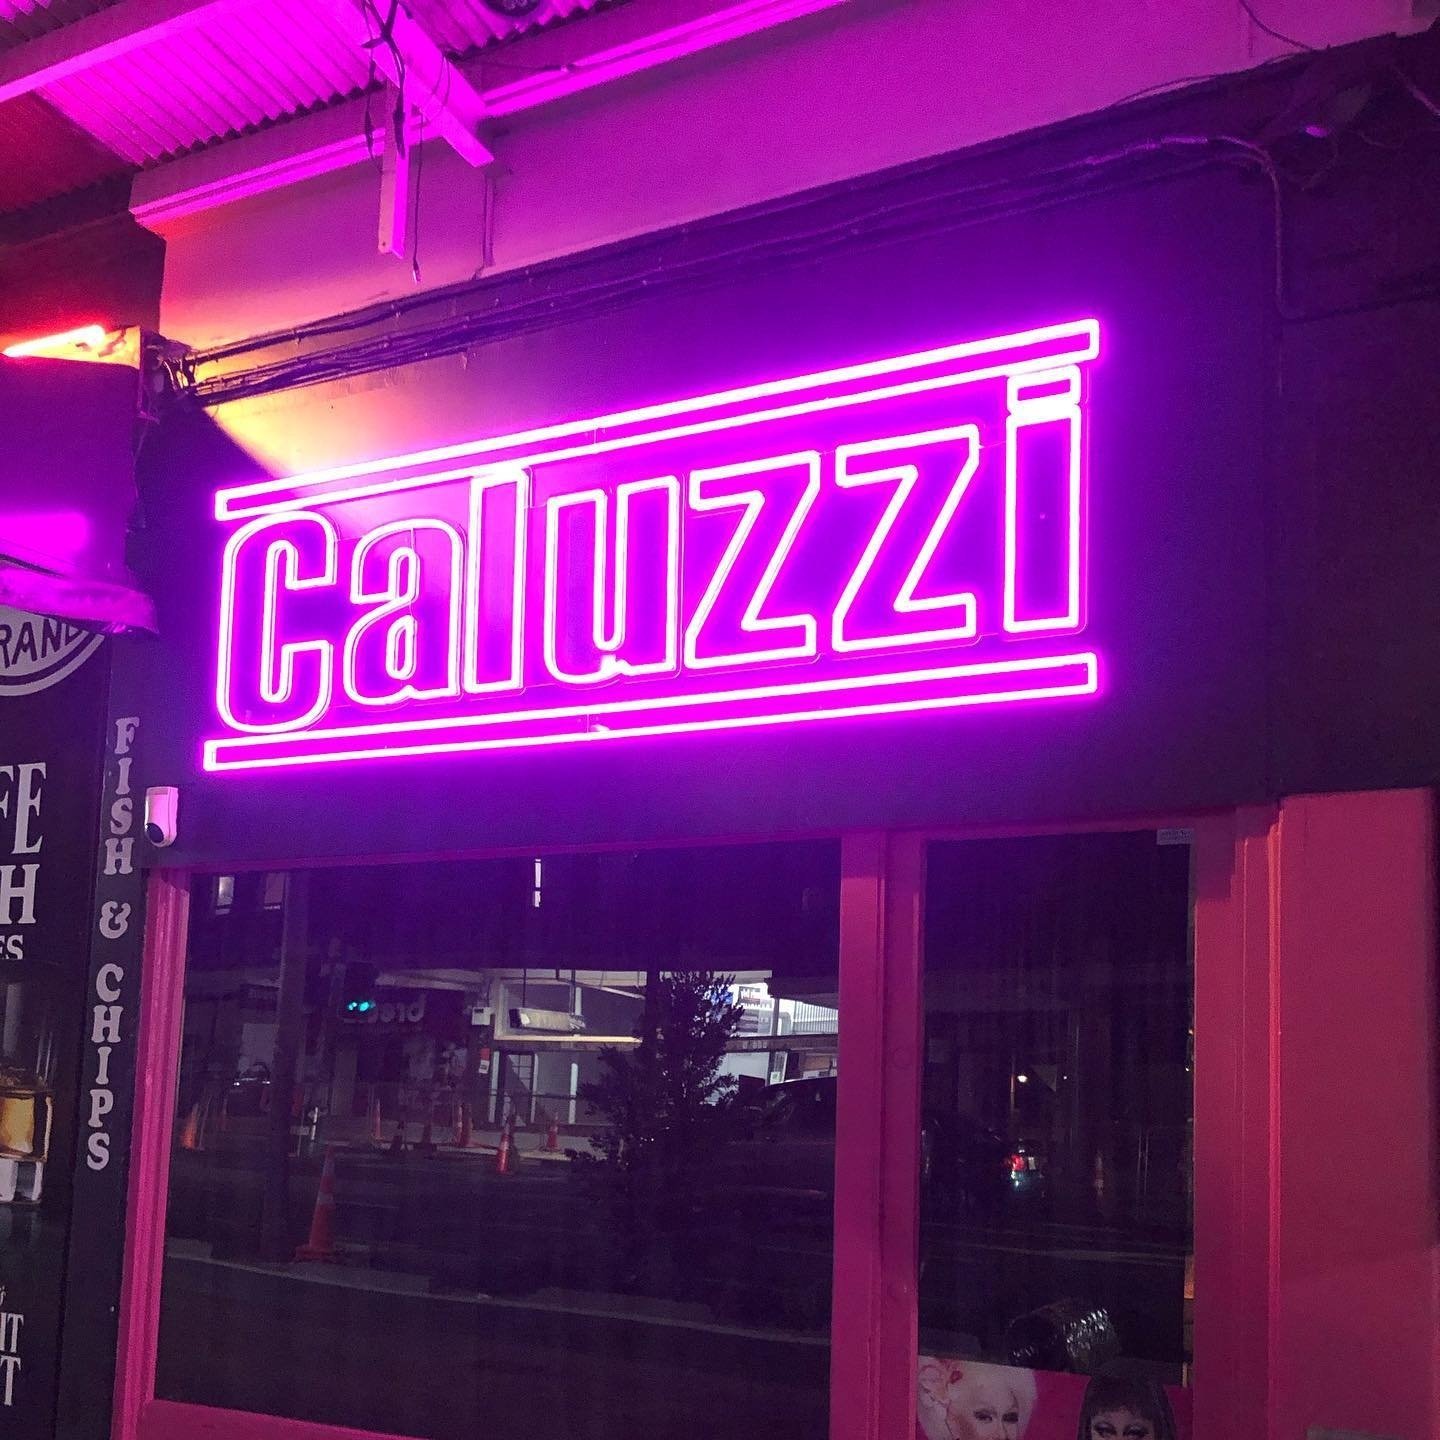 Caluzzi | Lounge Bar in CBD